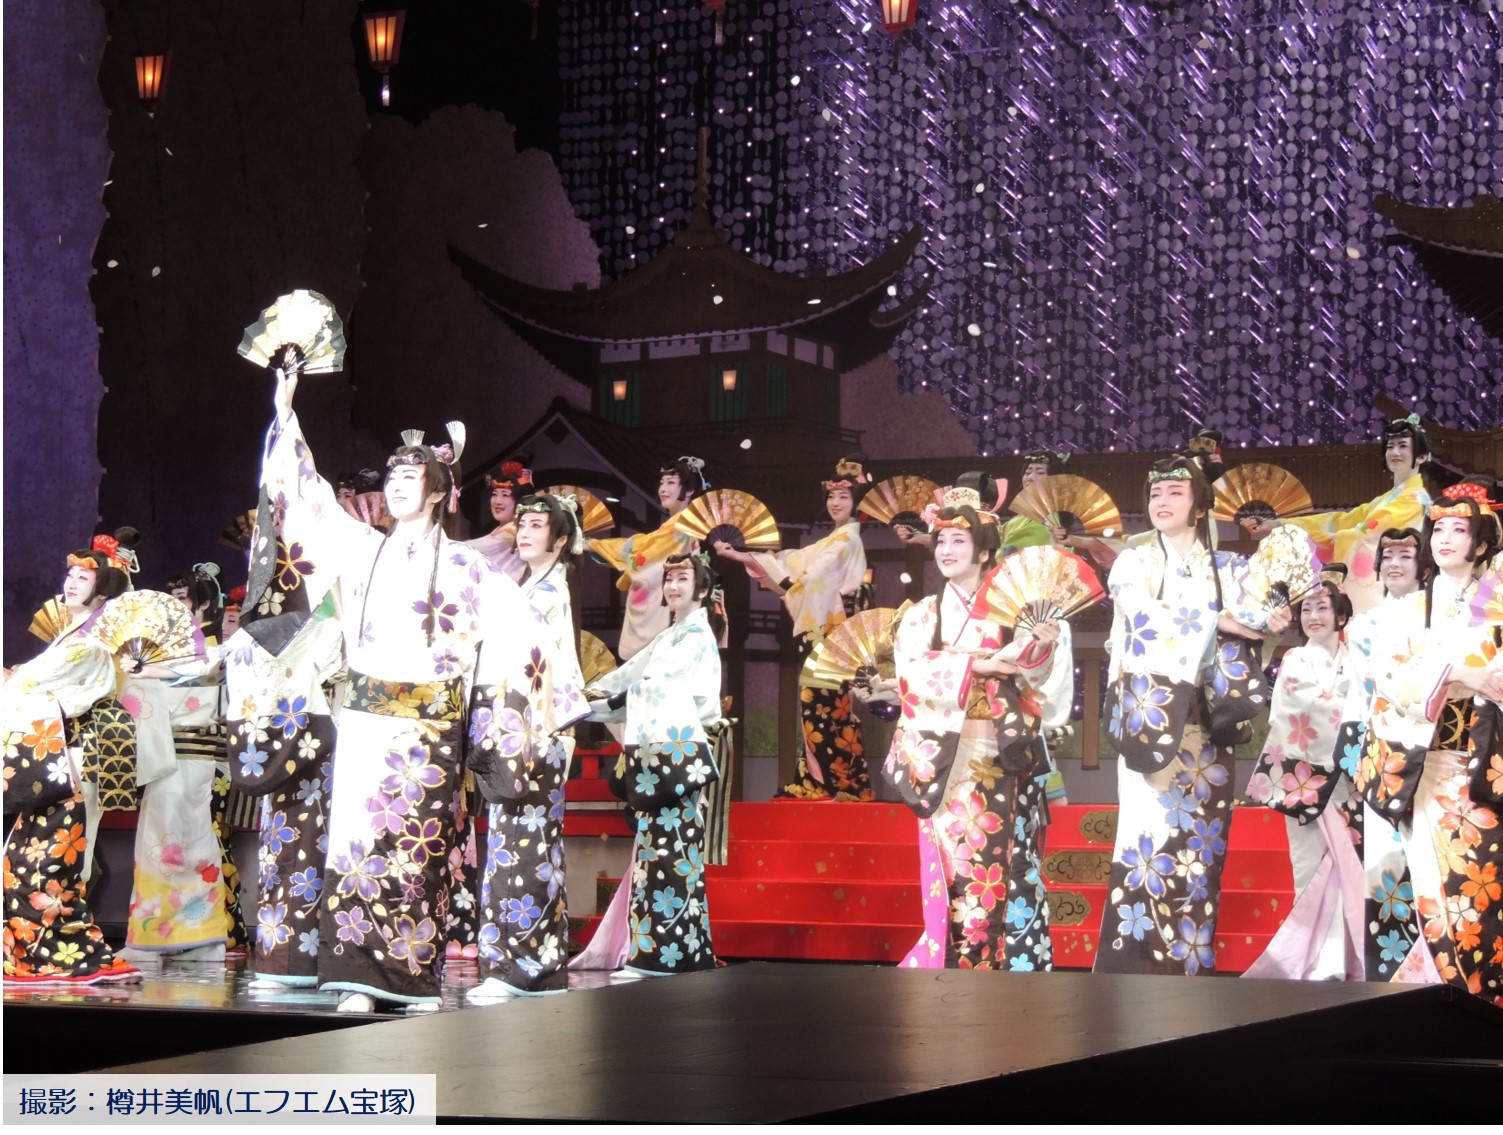 宝塚大劇場月組公演 『WELCOME TO TAKARAZUKA －雪と月と花と－』・『ピガール狂騒曲』 | エフエム宝塚